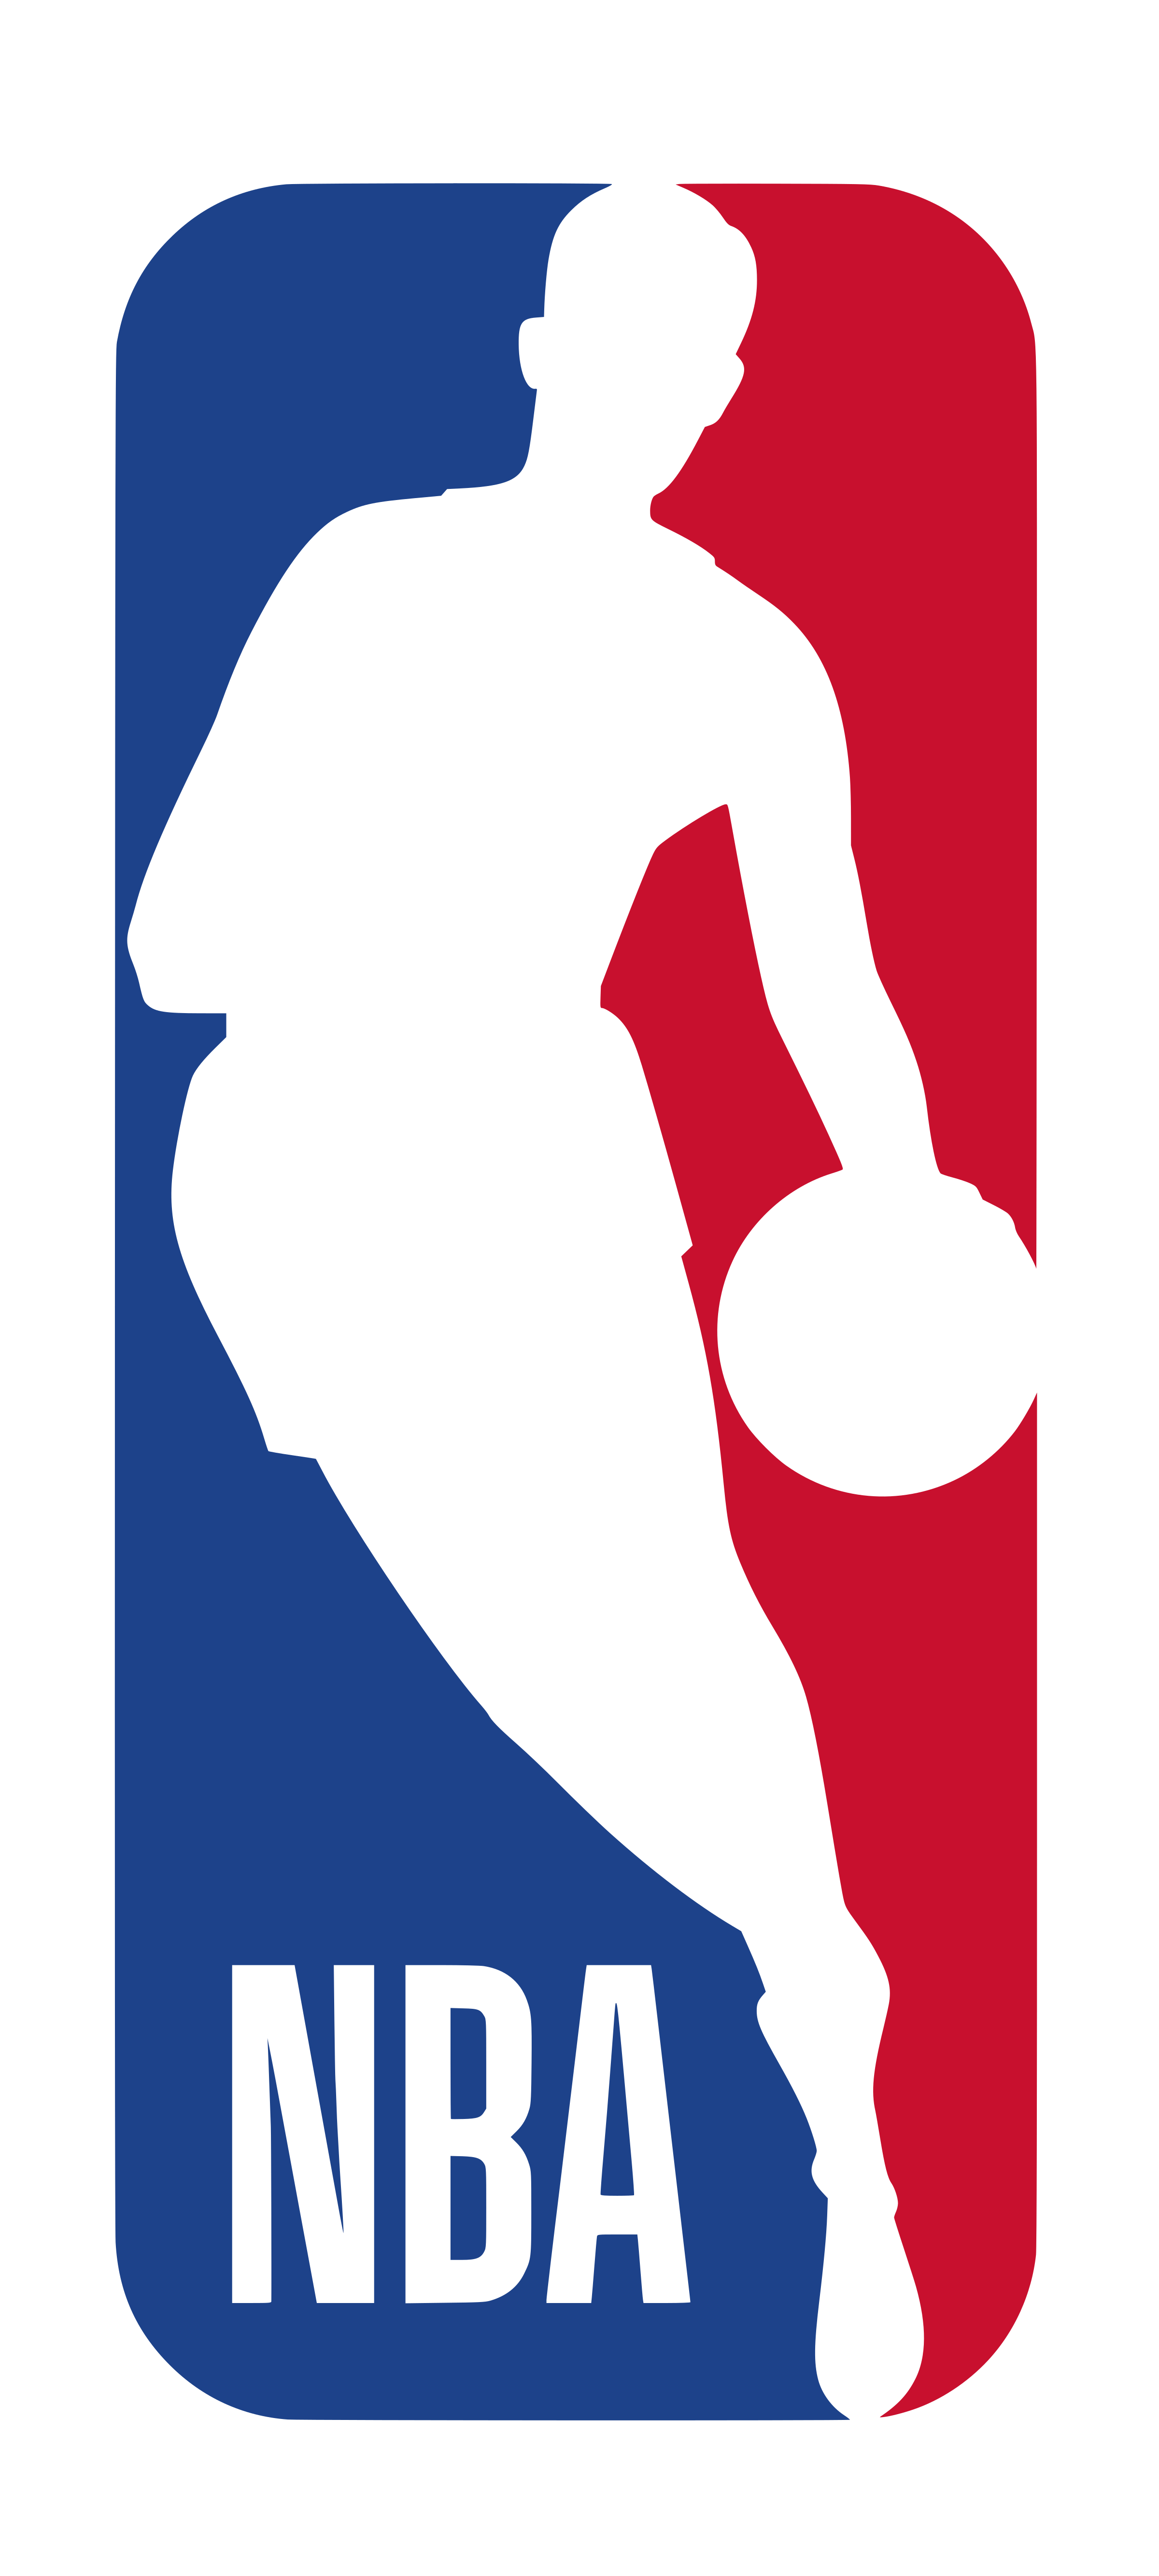 N.B.A. logo